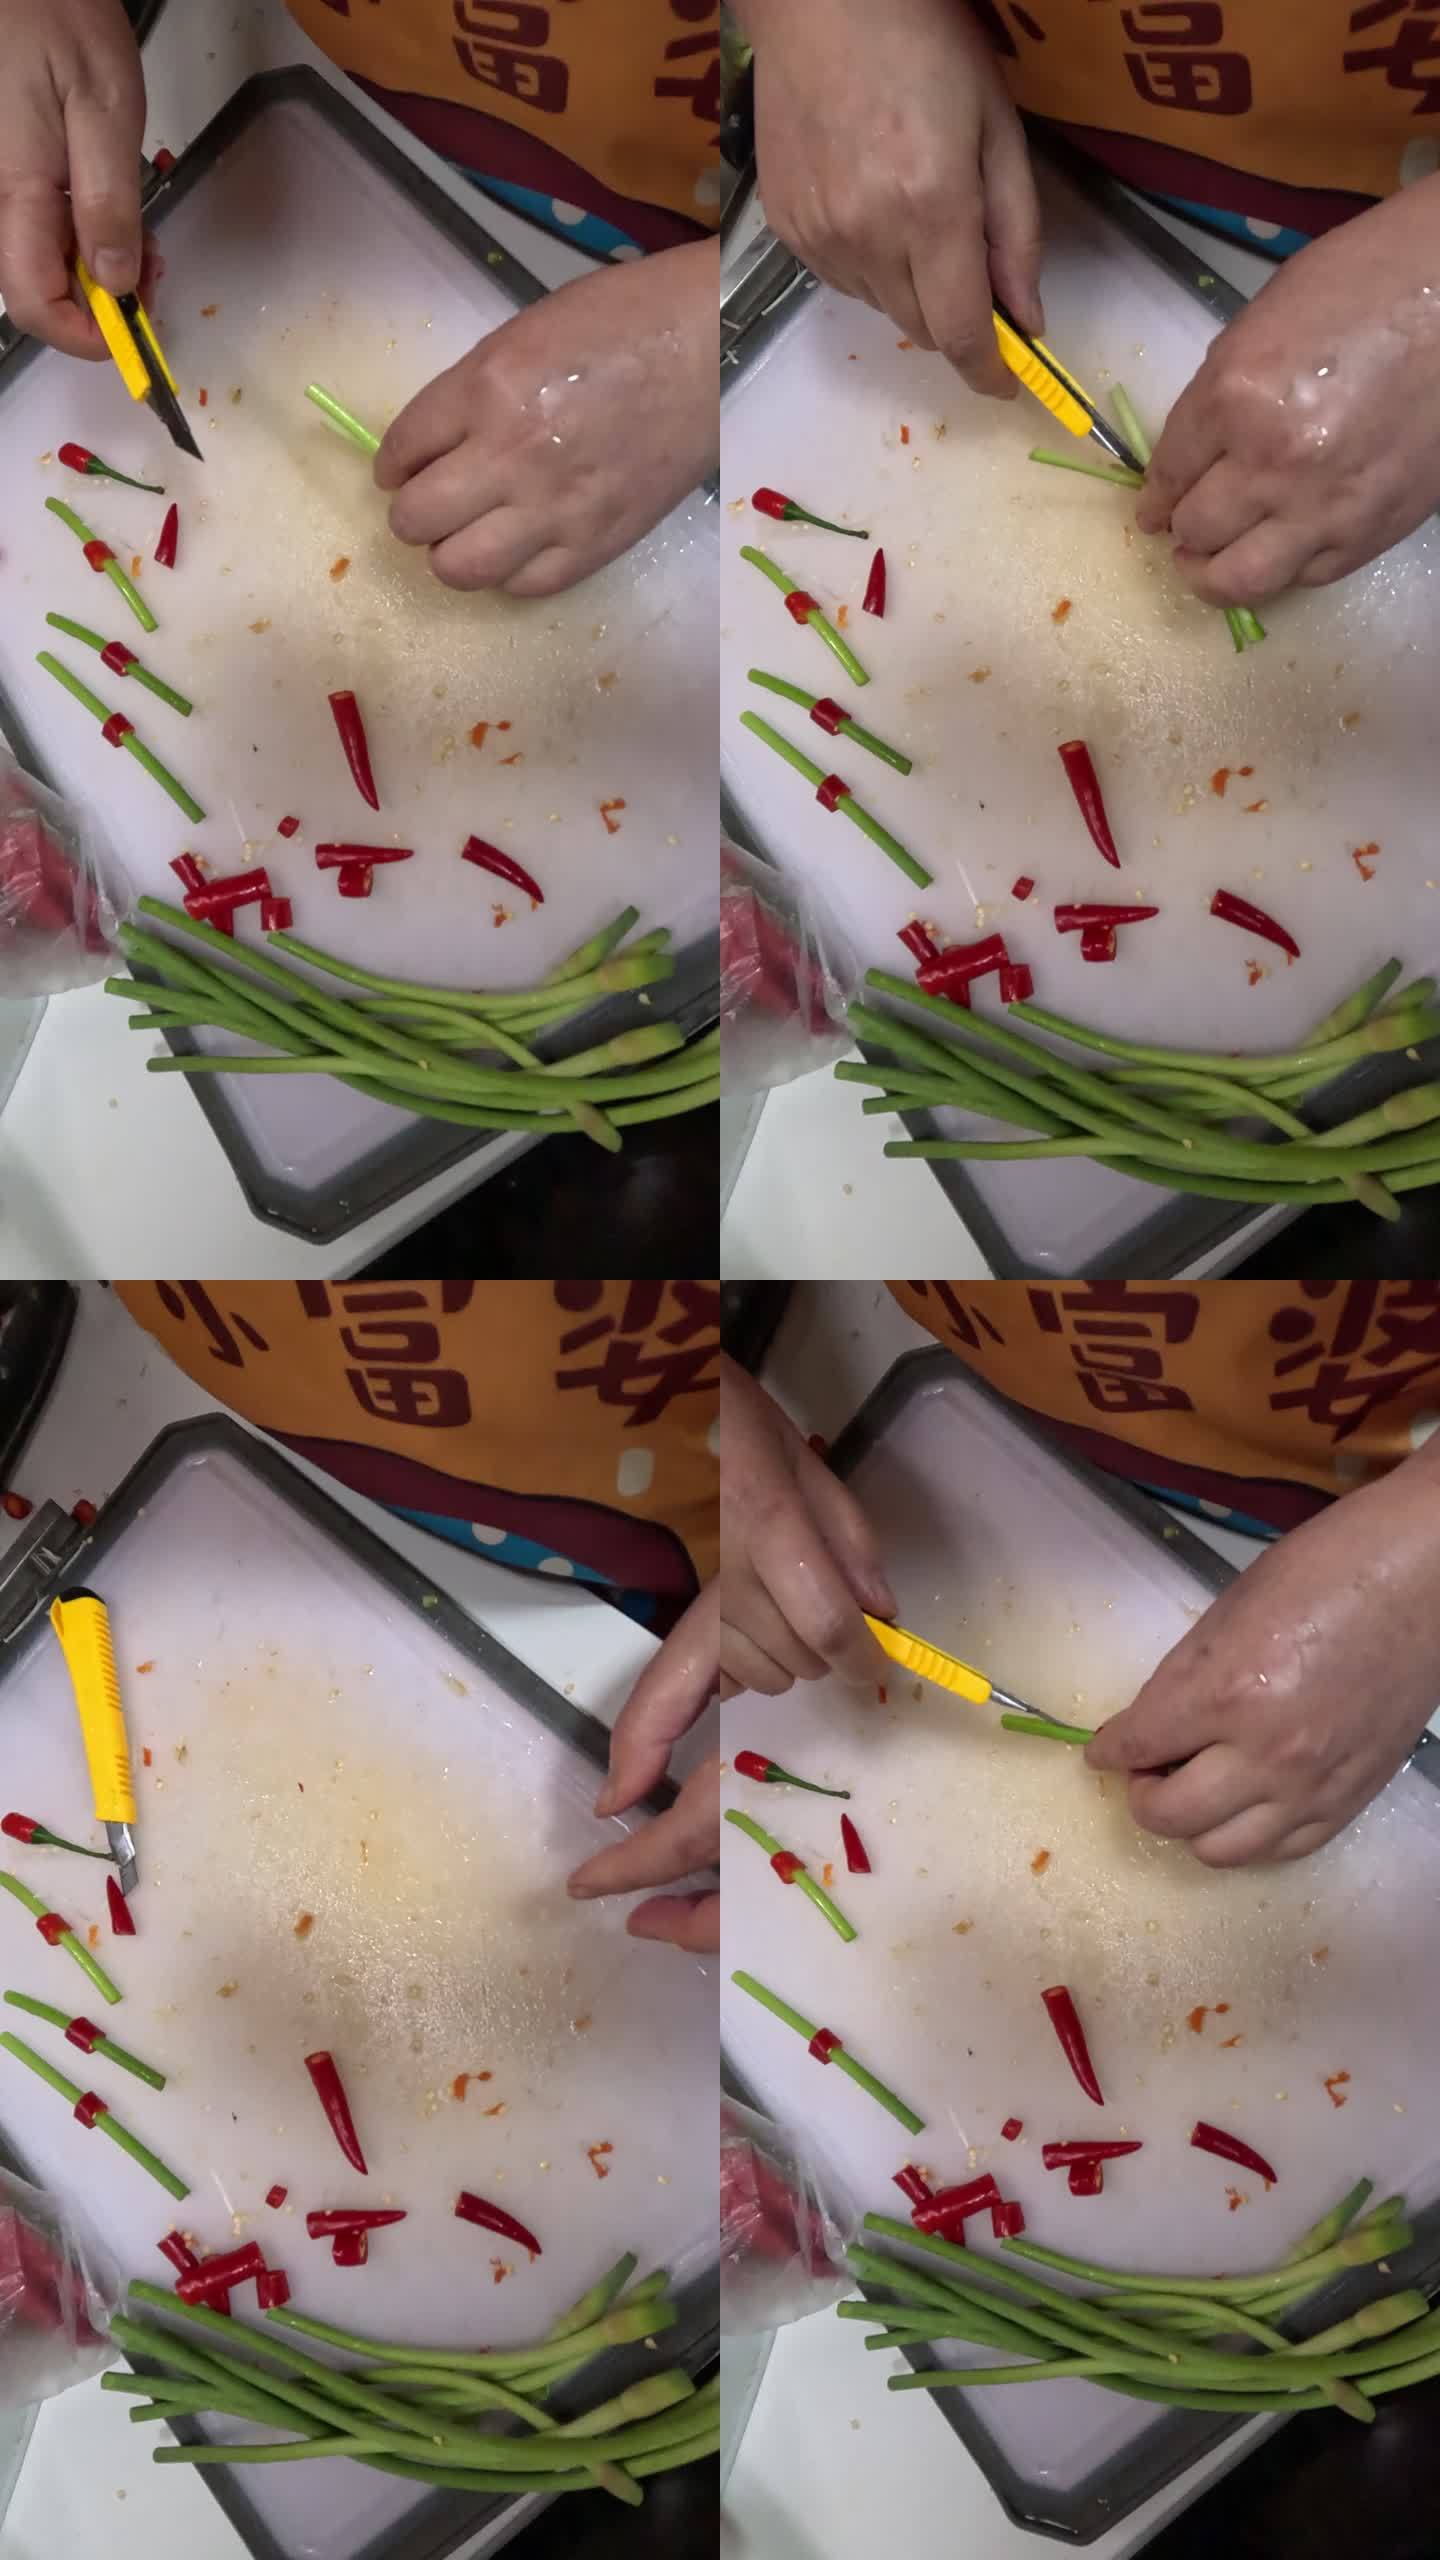 川菜红烧鸡的制作工艺过程